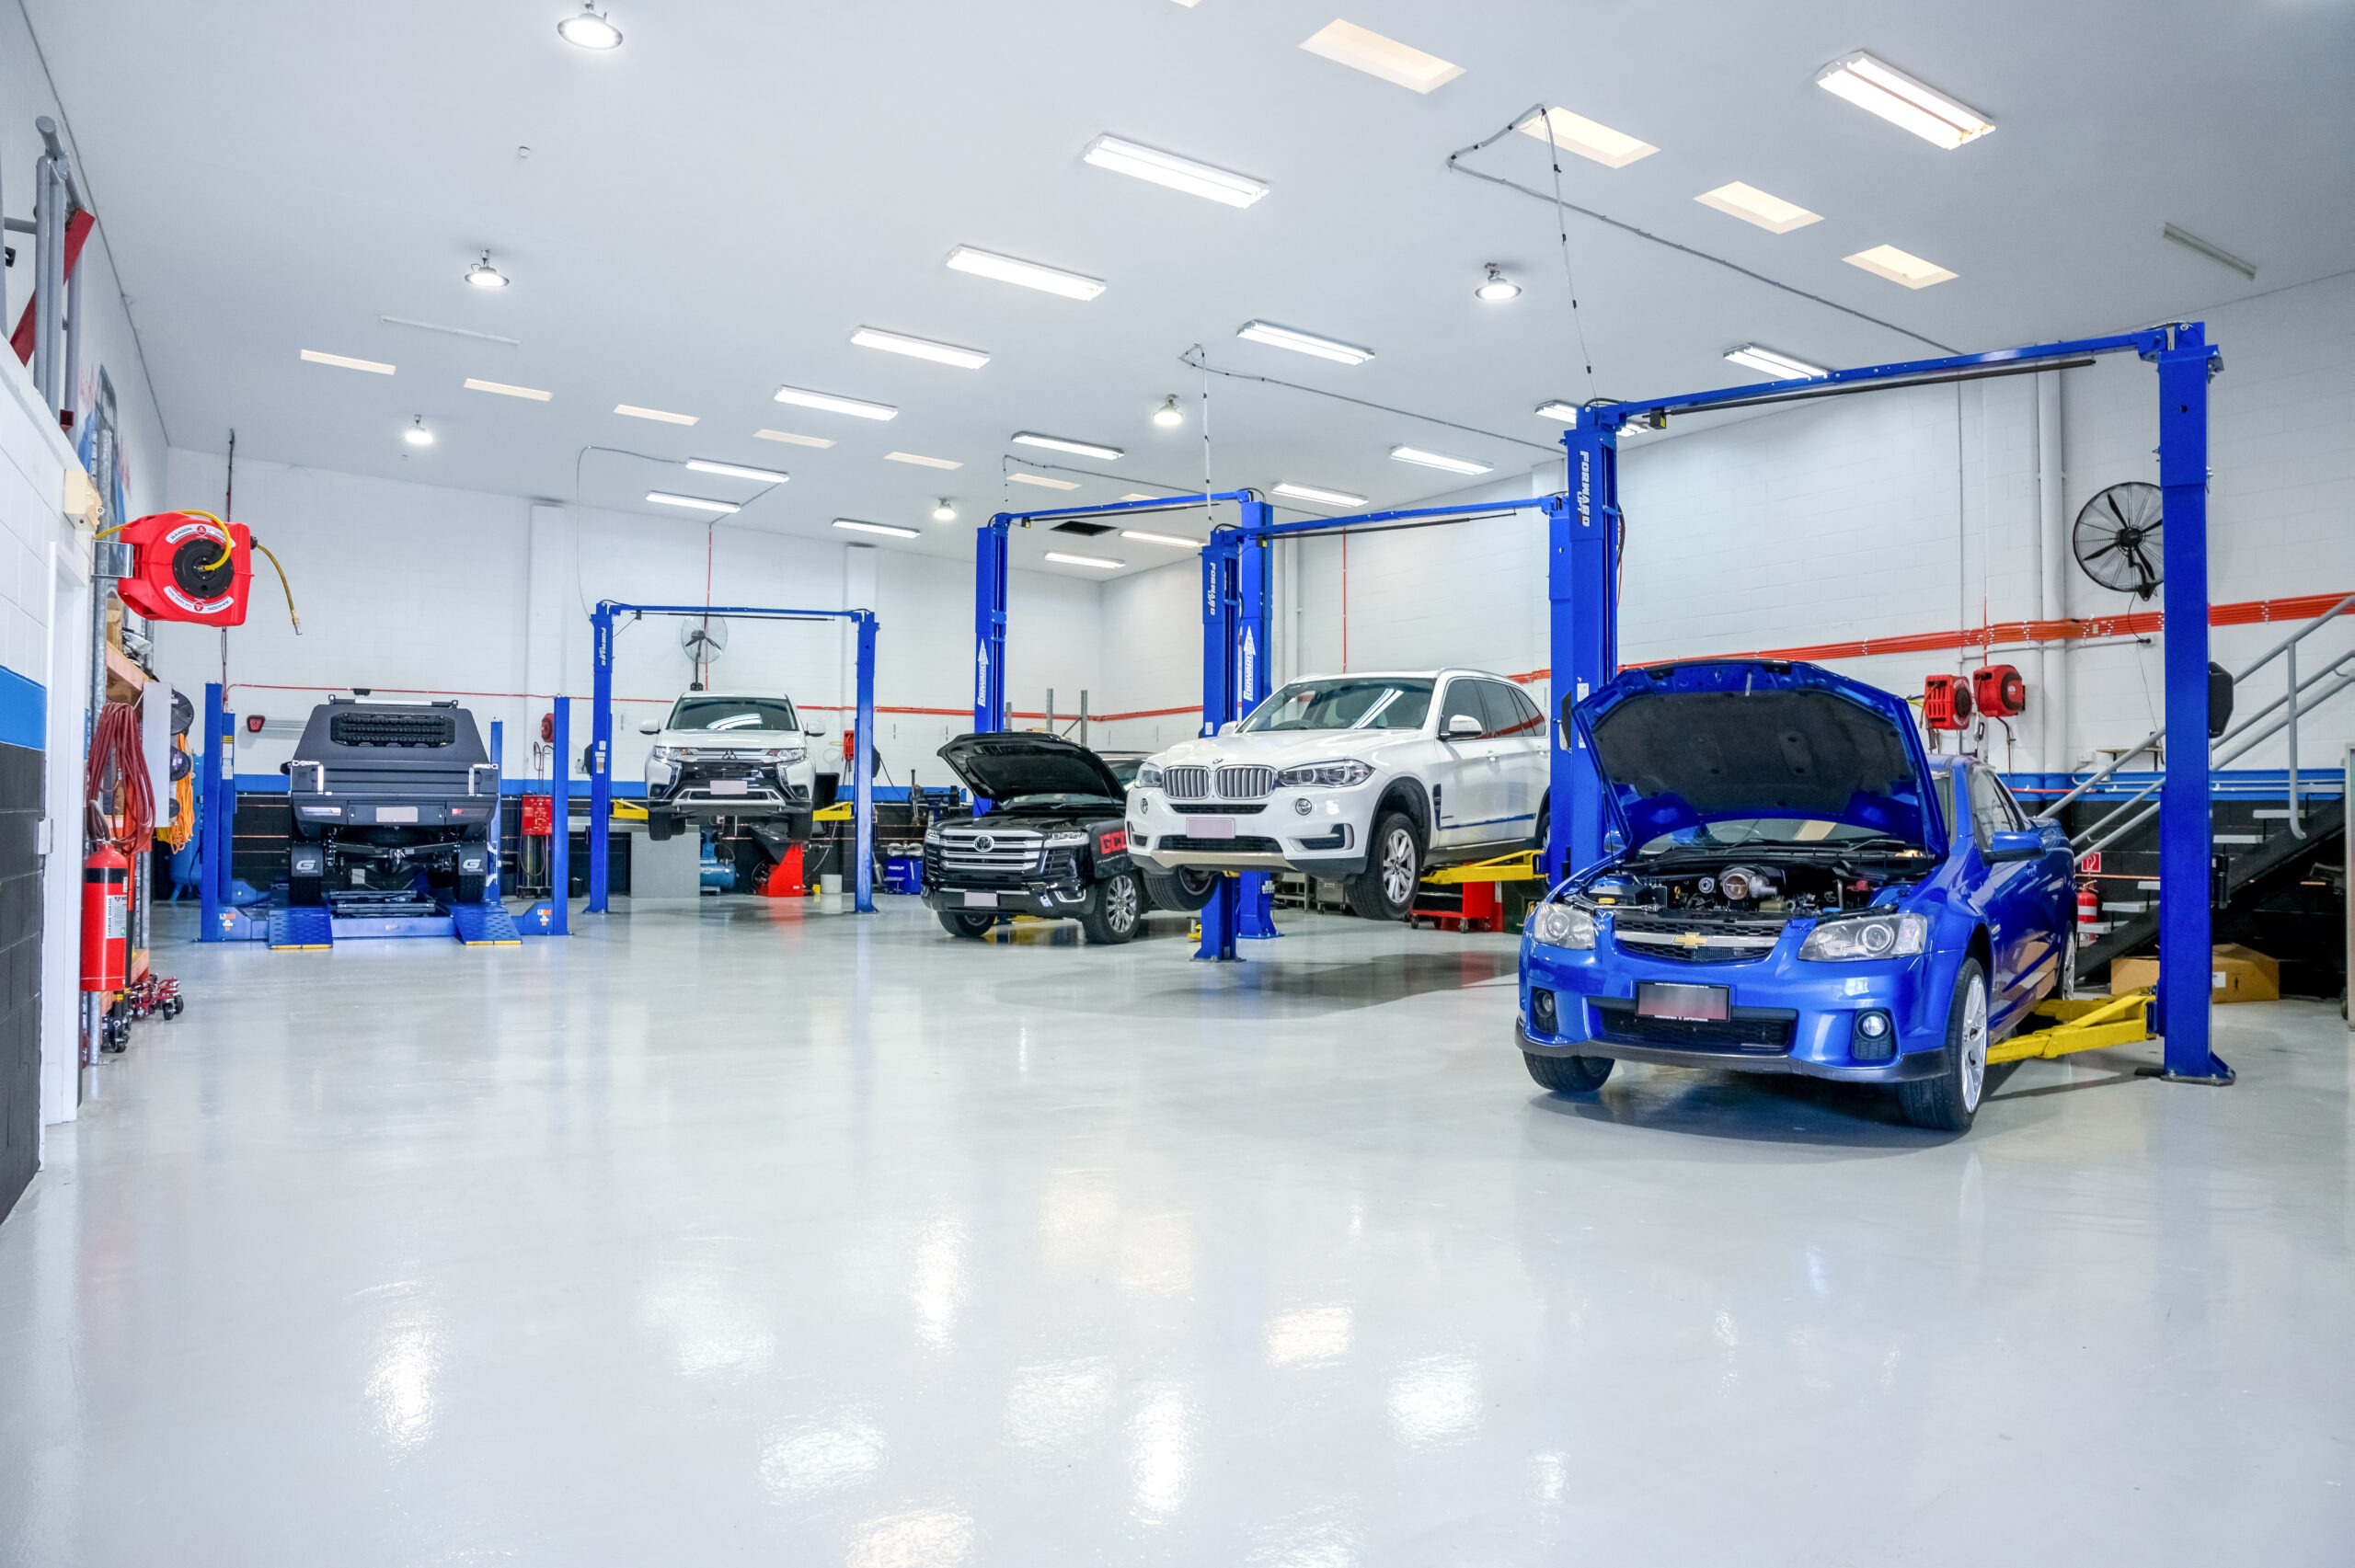 coastwide service centre mechanics' auto repair shop for car service